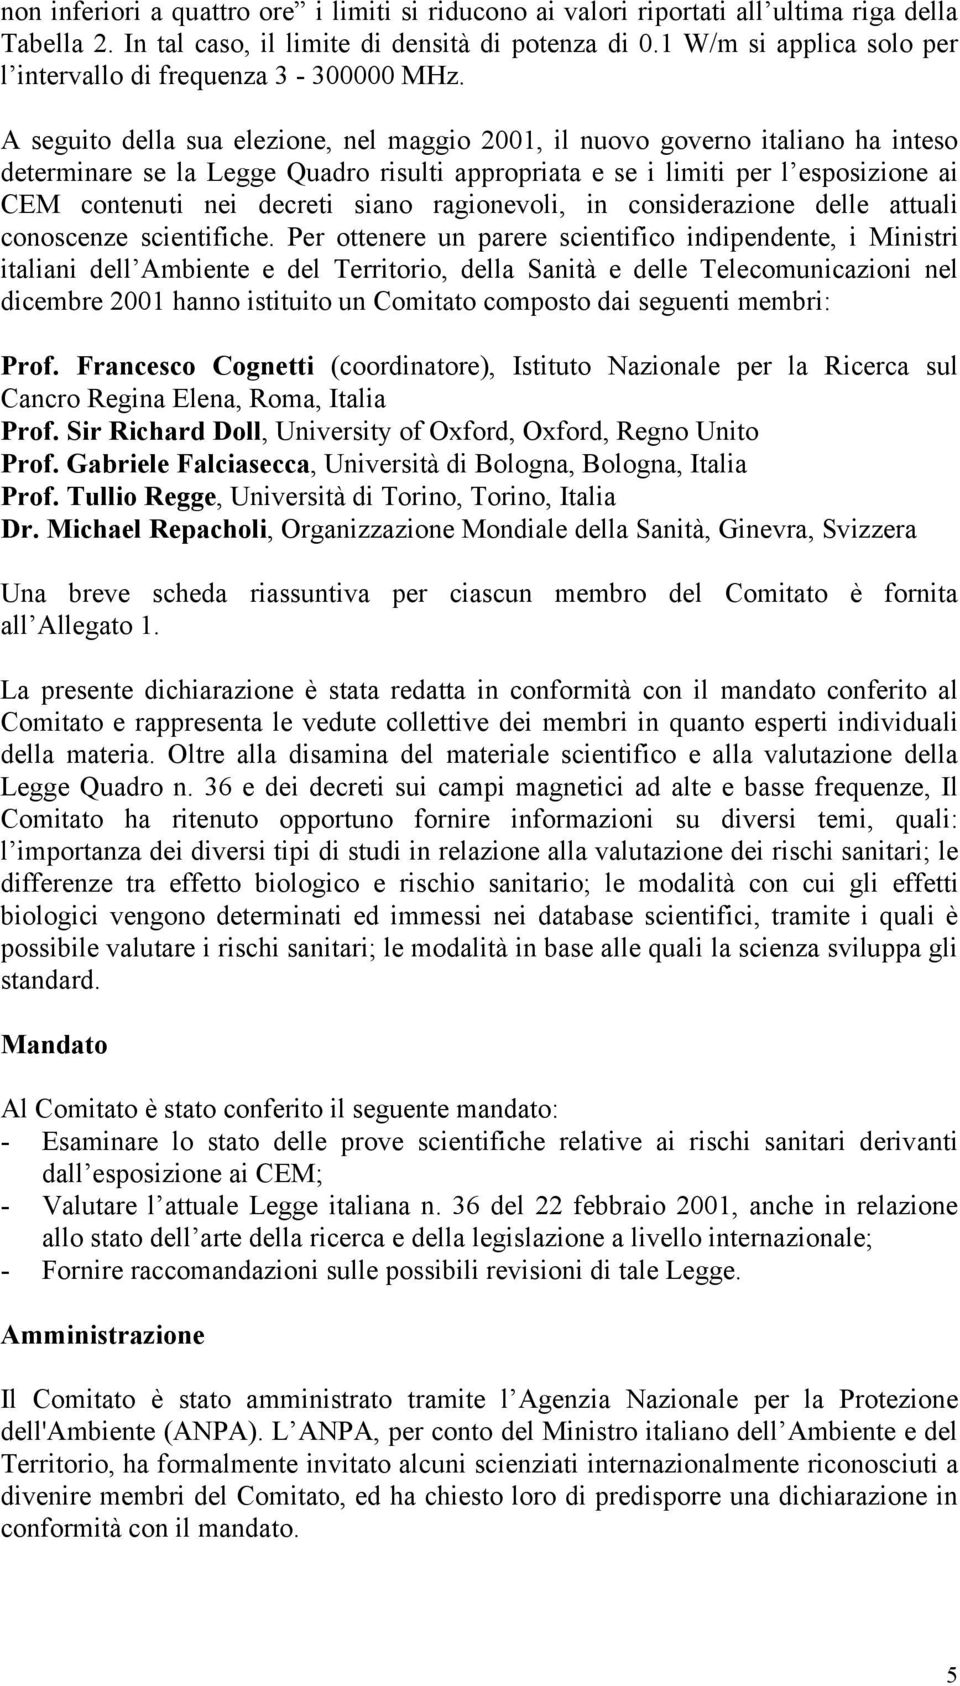 A seguito della sua elezione, nel maggio 2001, il nuovo governo italiano ha inteso determinare se la Legge Quadro risulti appropriata e se i limiti per l esposizione ai CEM contenuti nei decreti